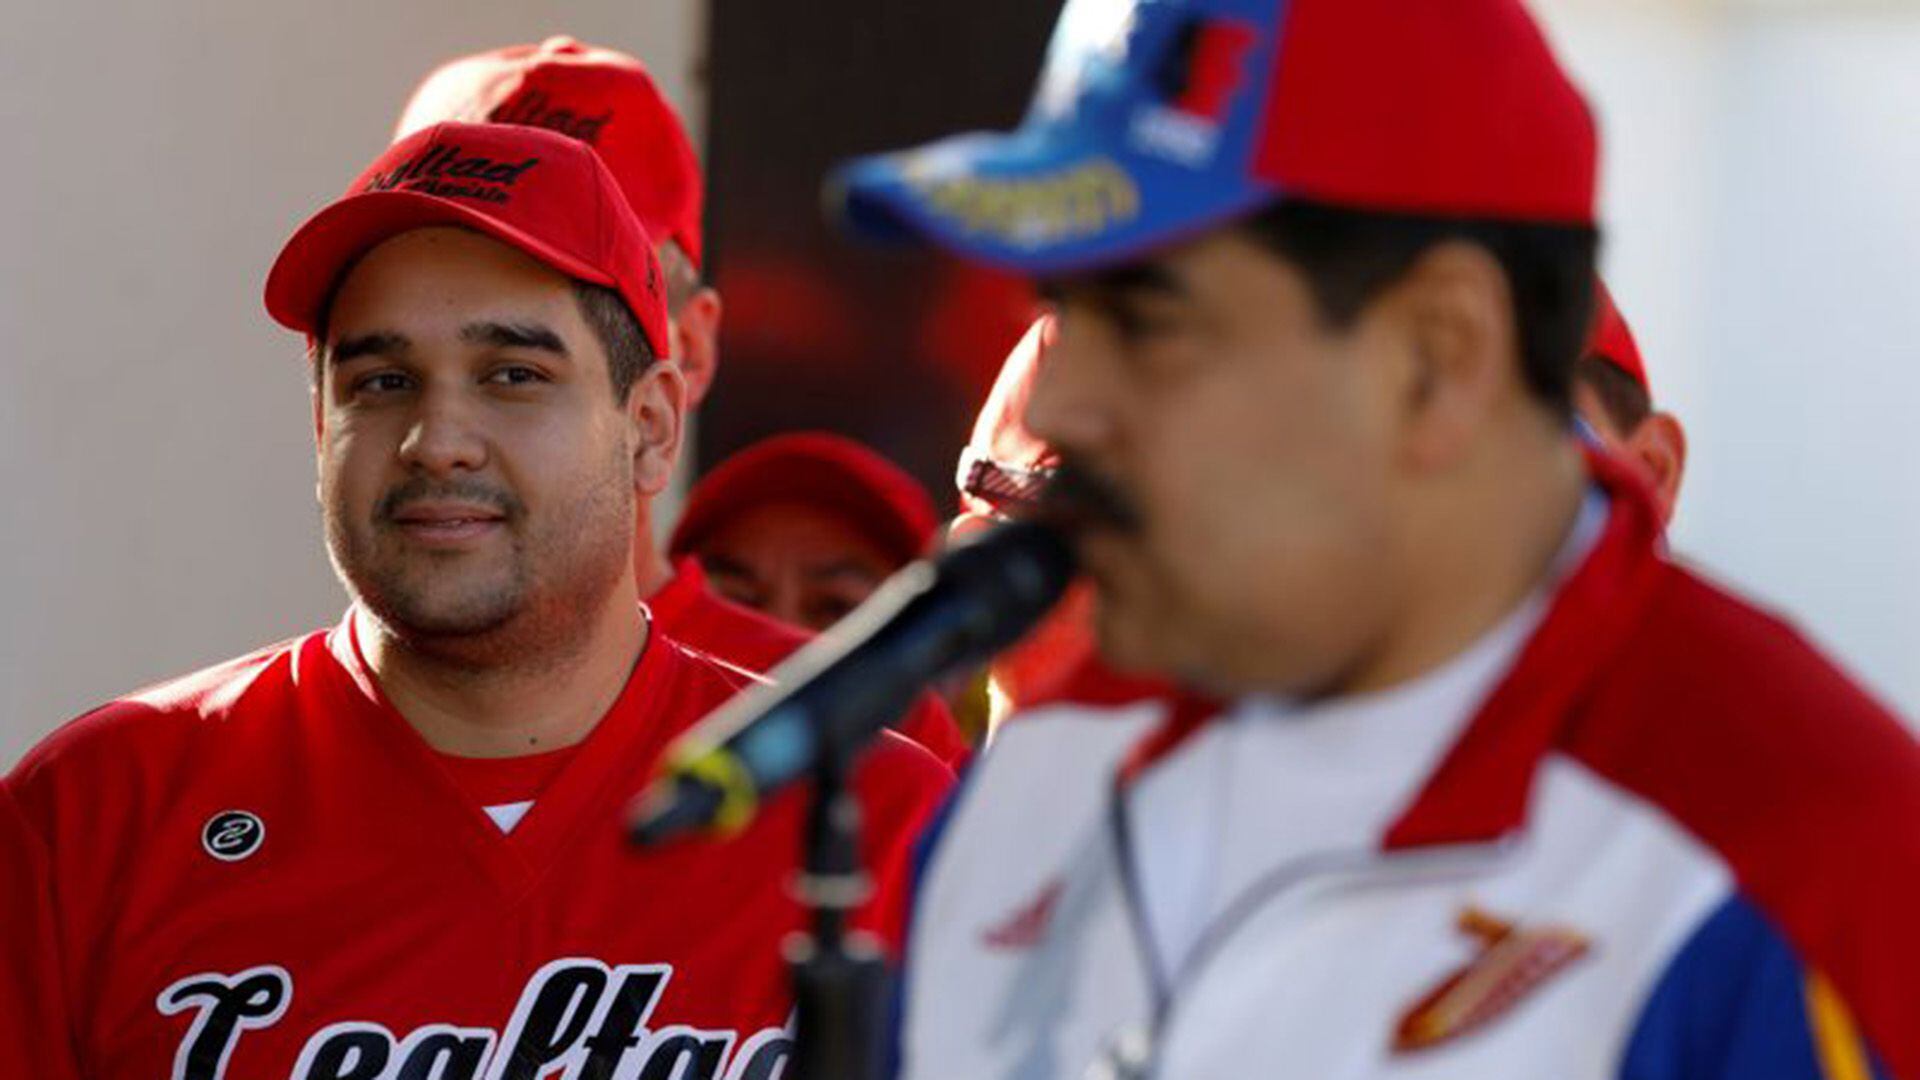 Nicolás Maduro Guerra, hijo del dictador venezolano, observa a su padre mientras realiza una conferencia de prensa en Caracas (Foto: Reuters)